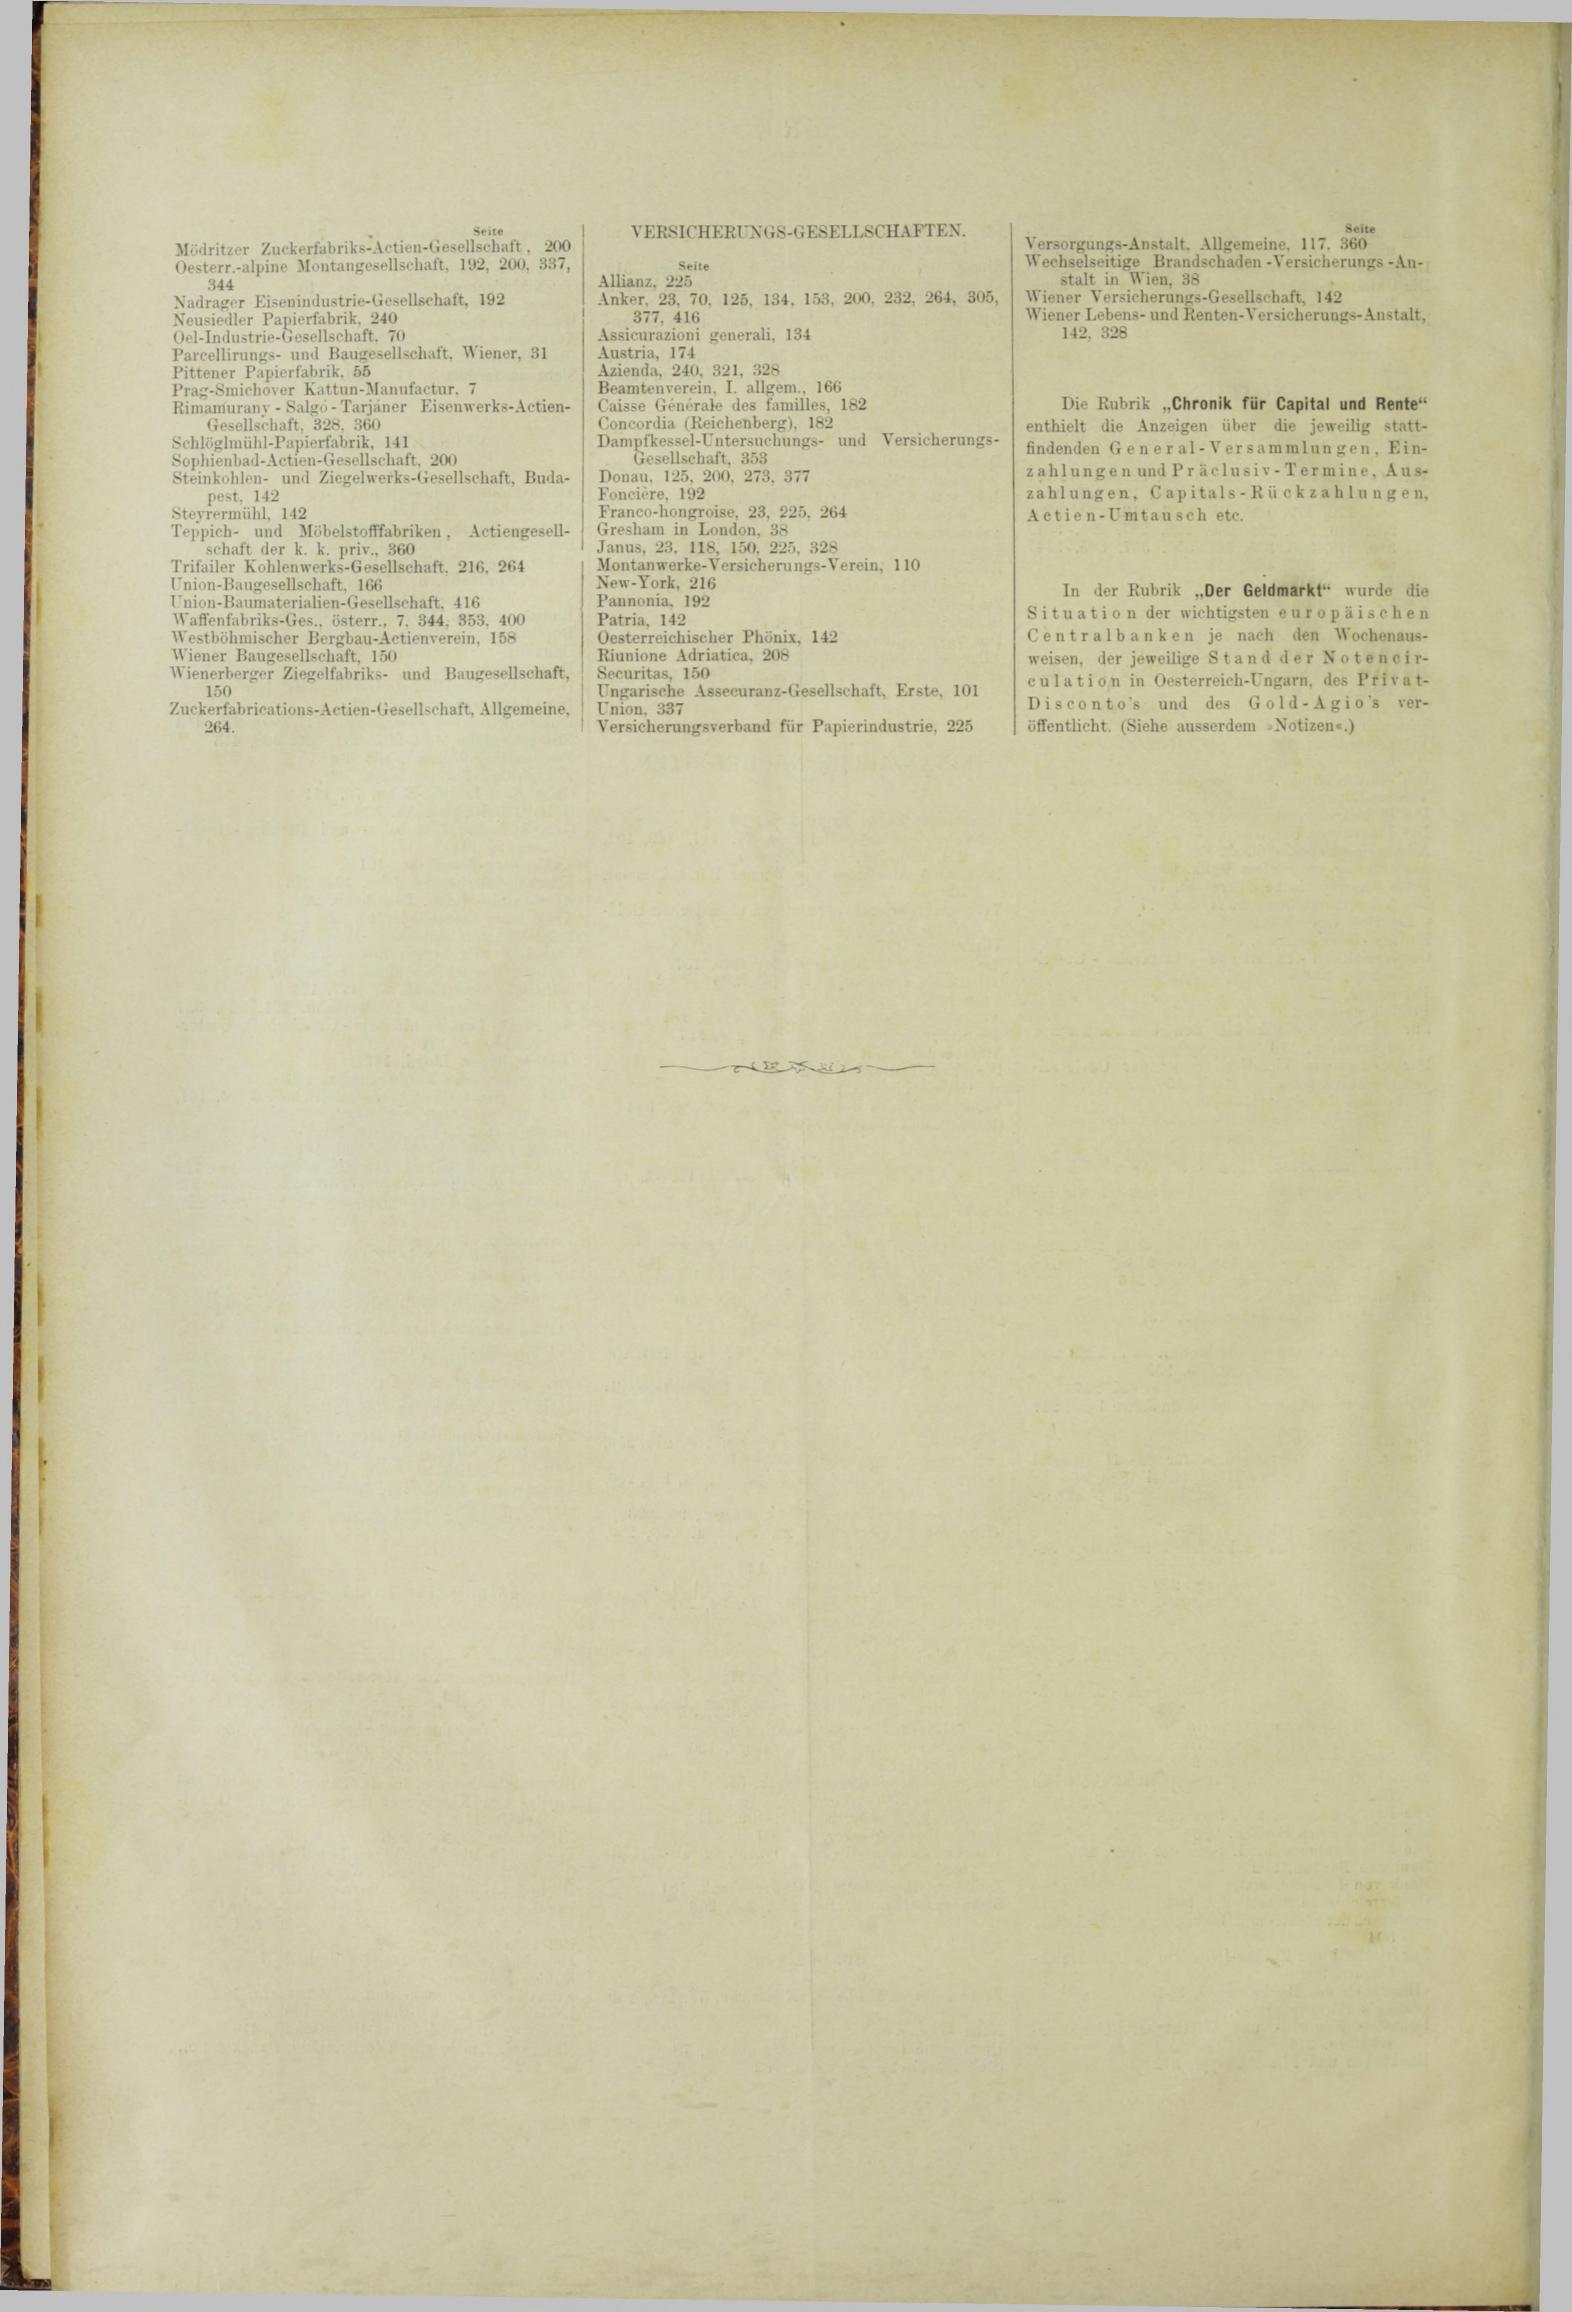 Der Tresor 12.07.1883 - Seite 12